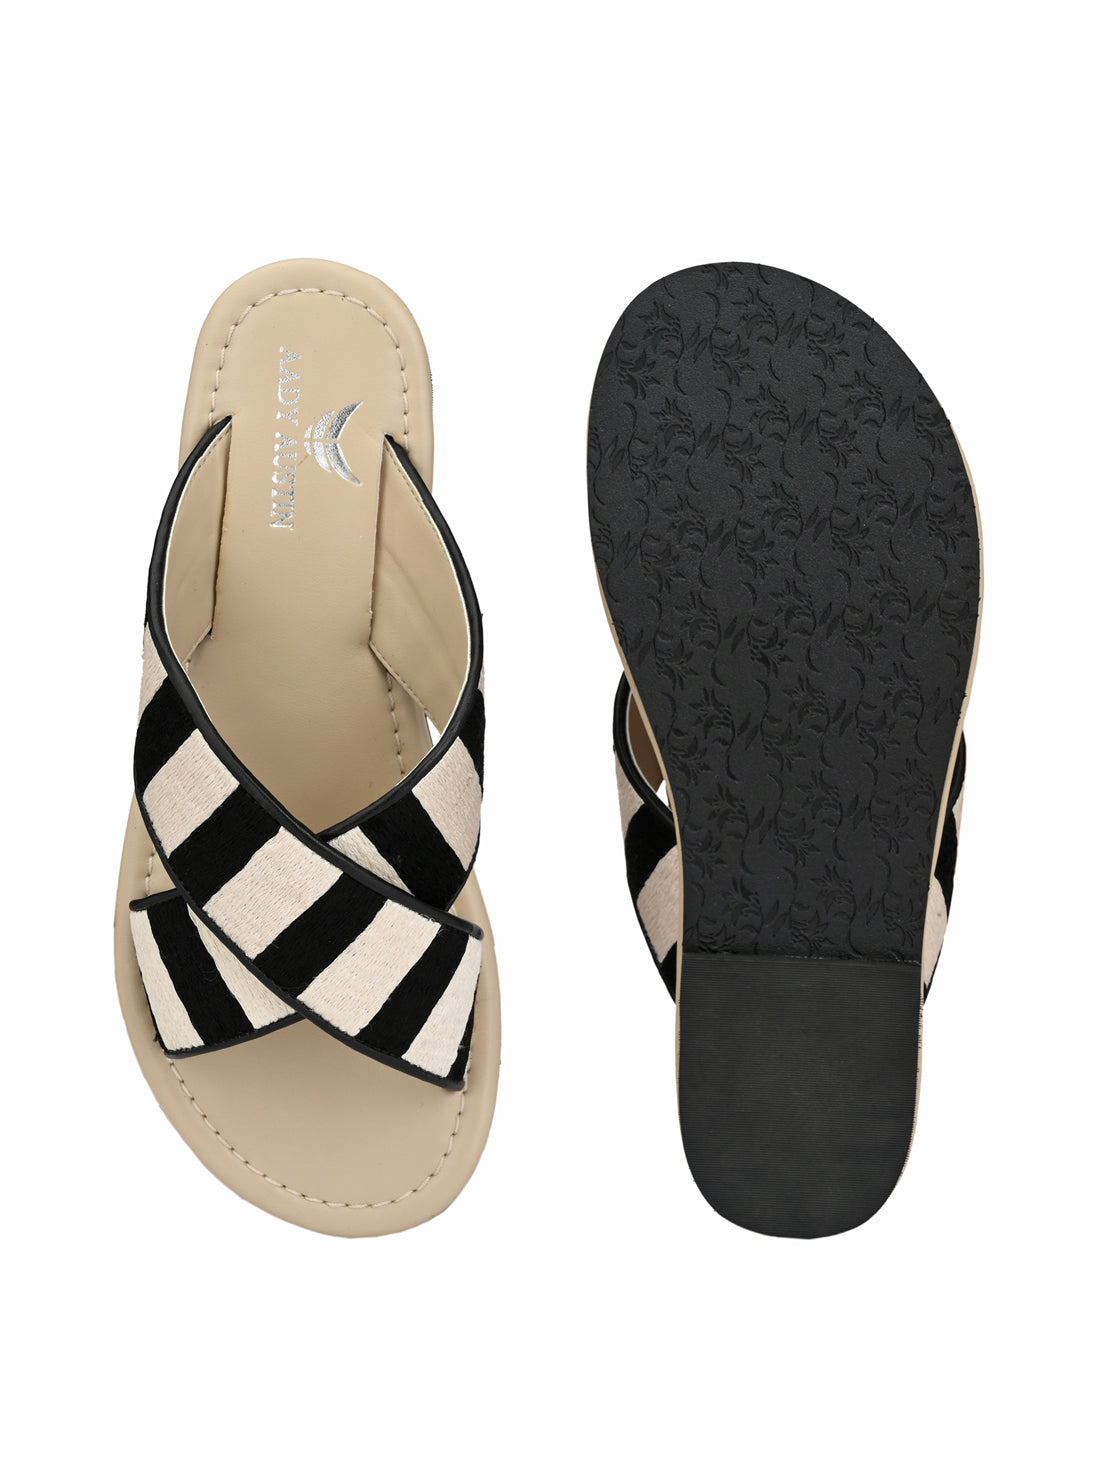 Aady Austin Women Black/White Open Toe Flats (AUSF19024)